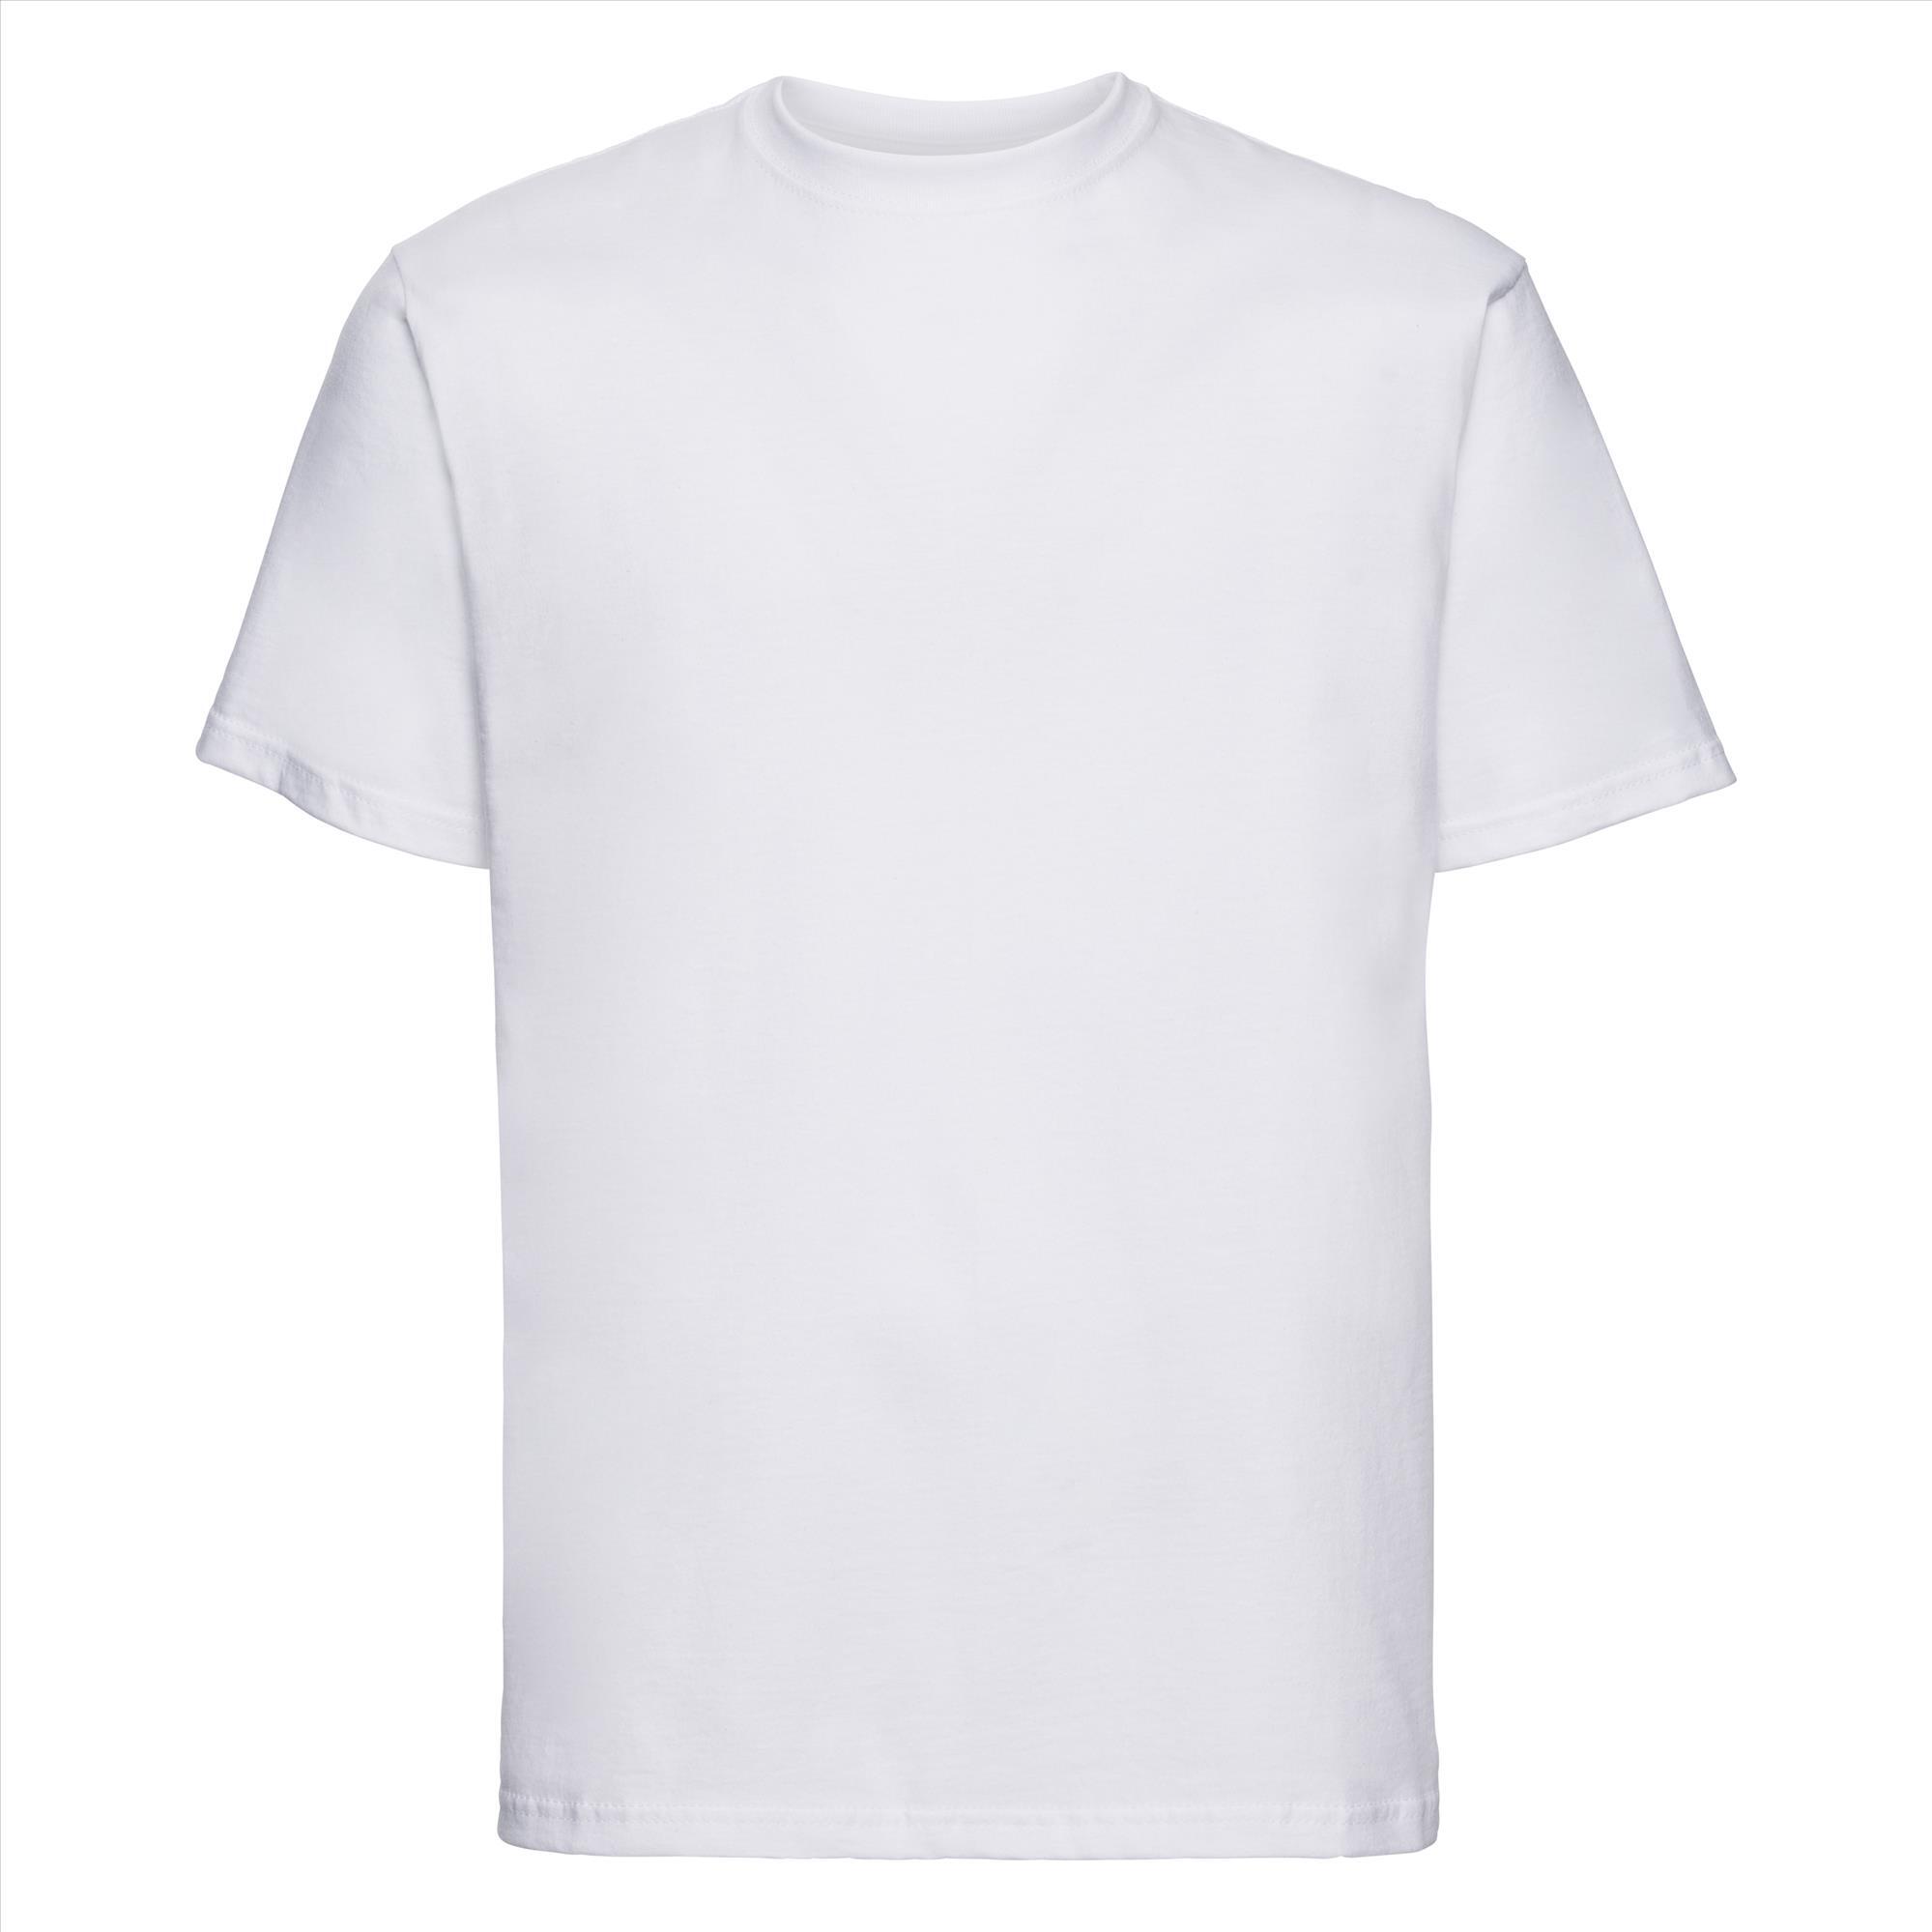 T-shirt voor mannen wit te personaliseren te bedrukken